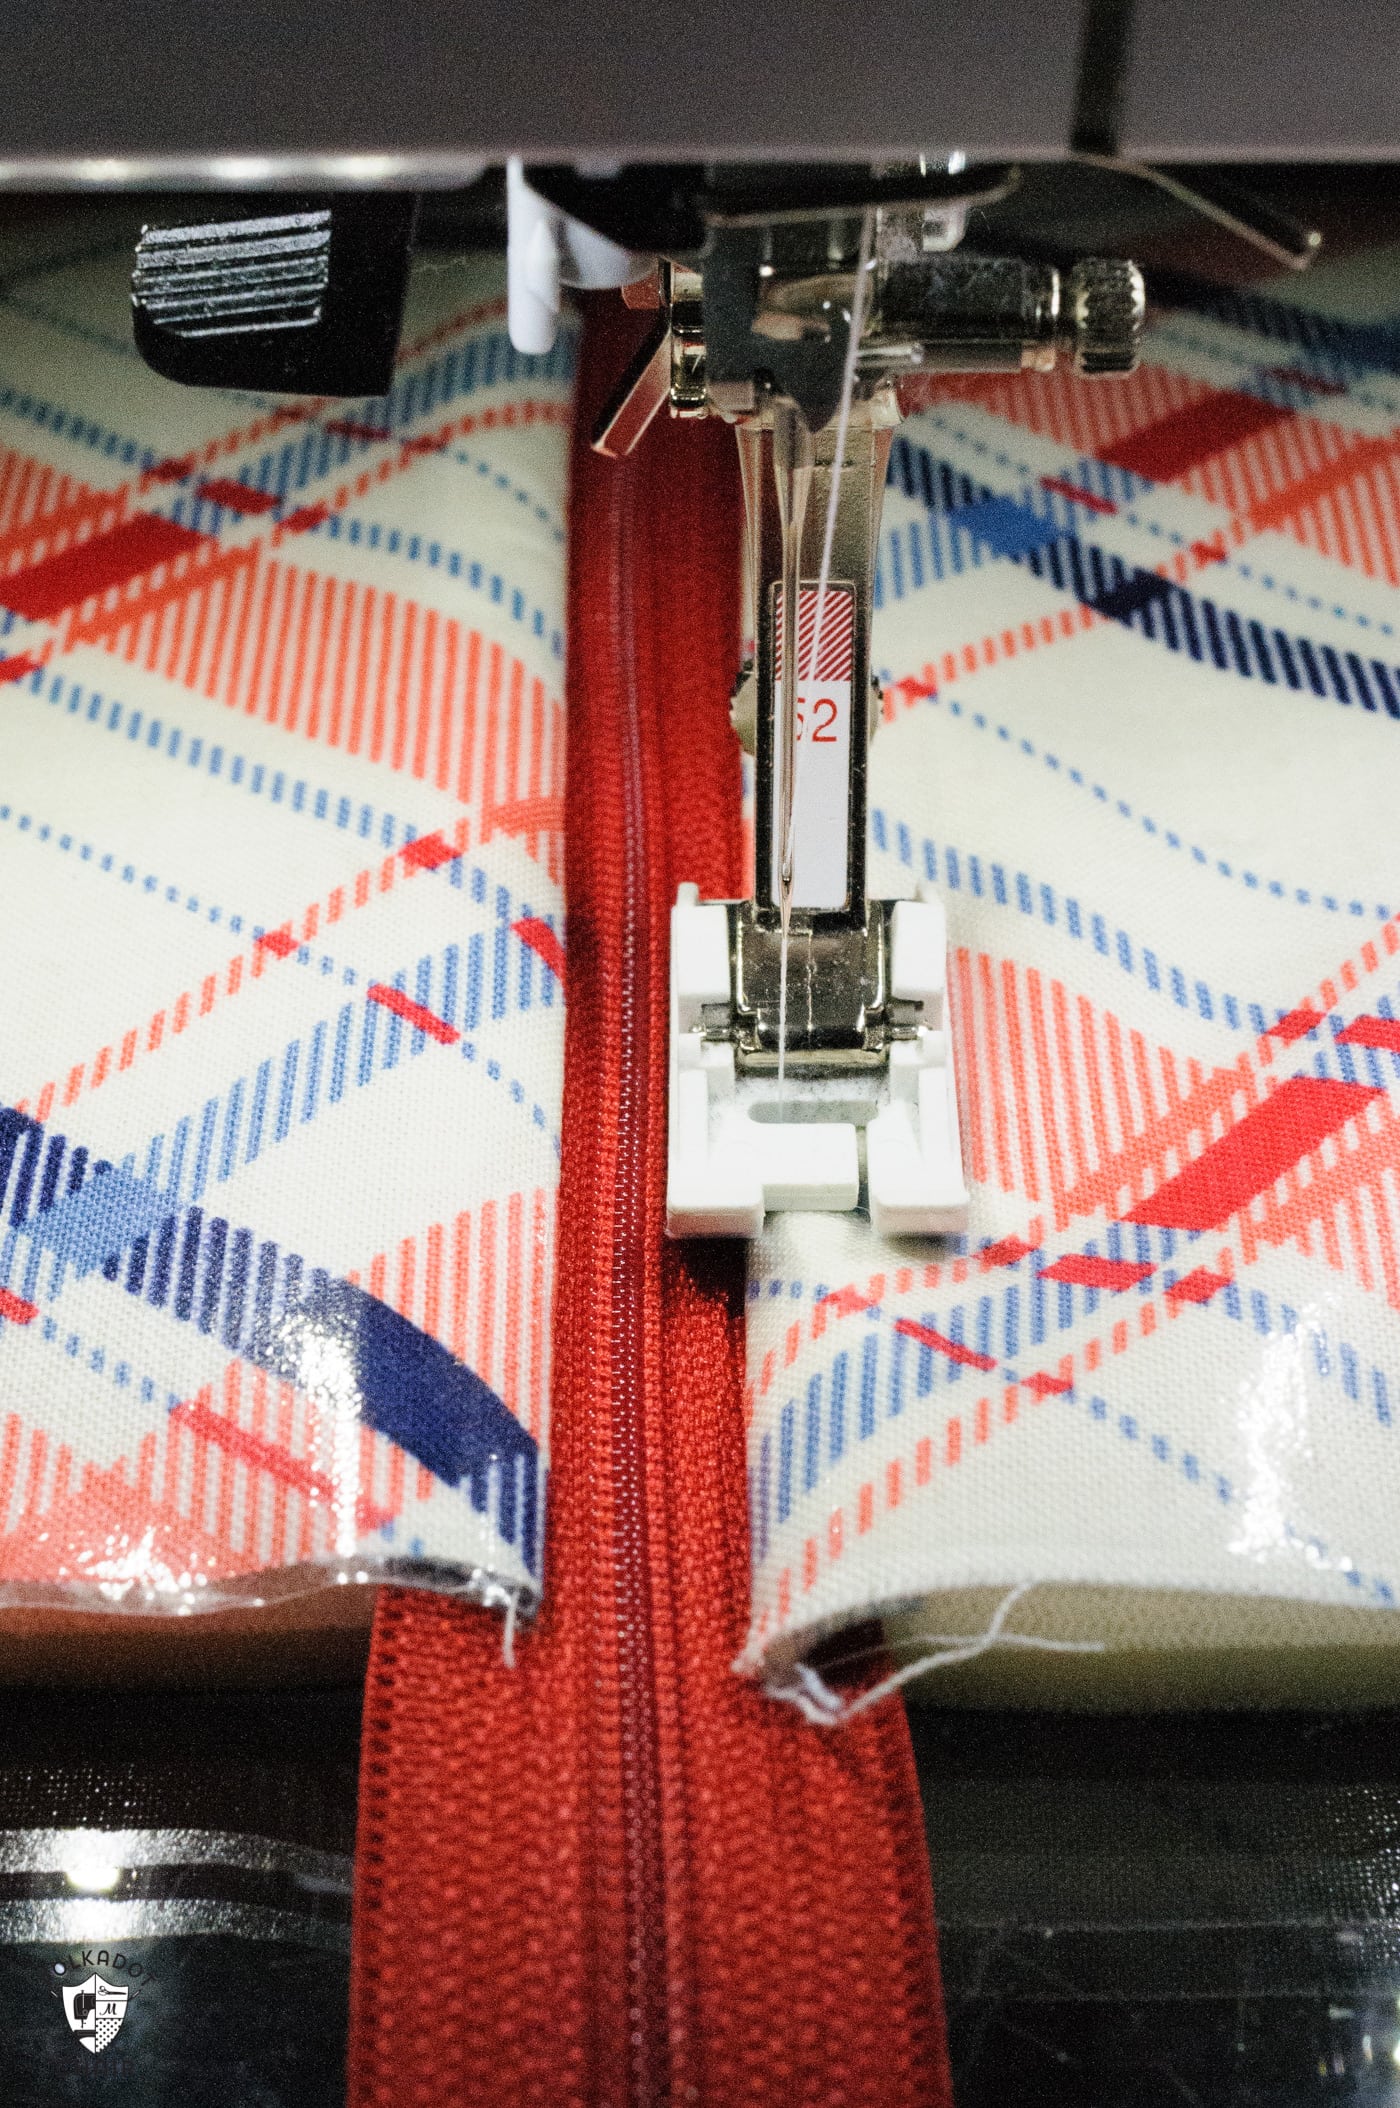 Pied-de-biche en téflon sur machine à coudre, tissu laminé rouge et bleu